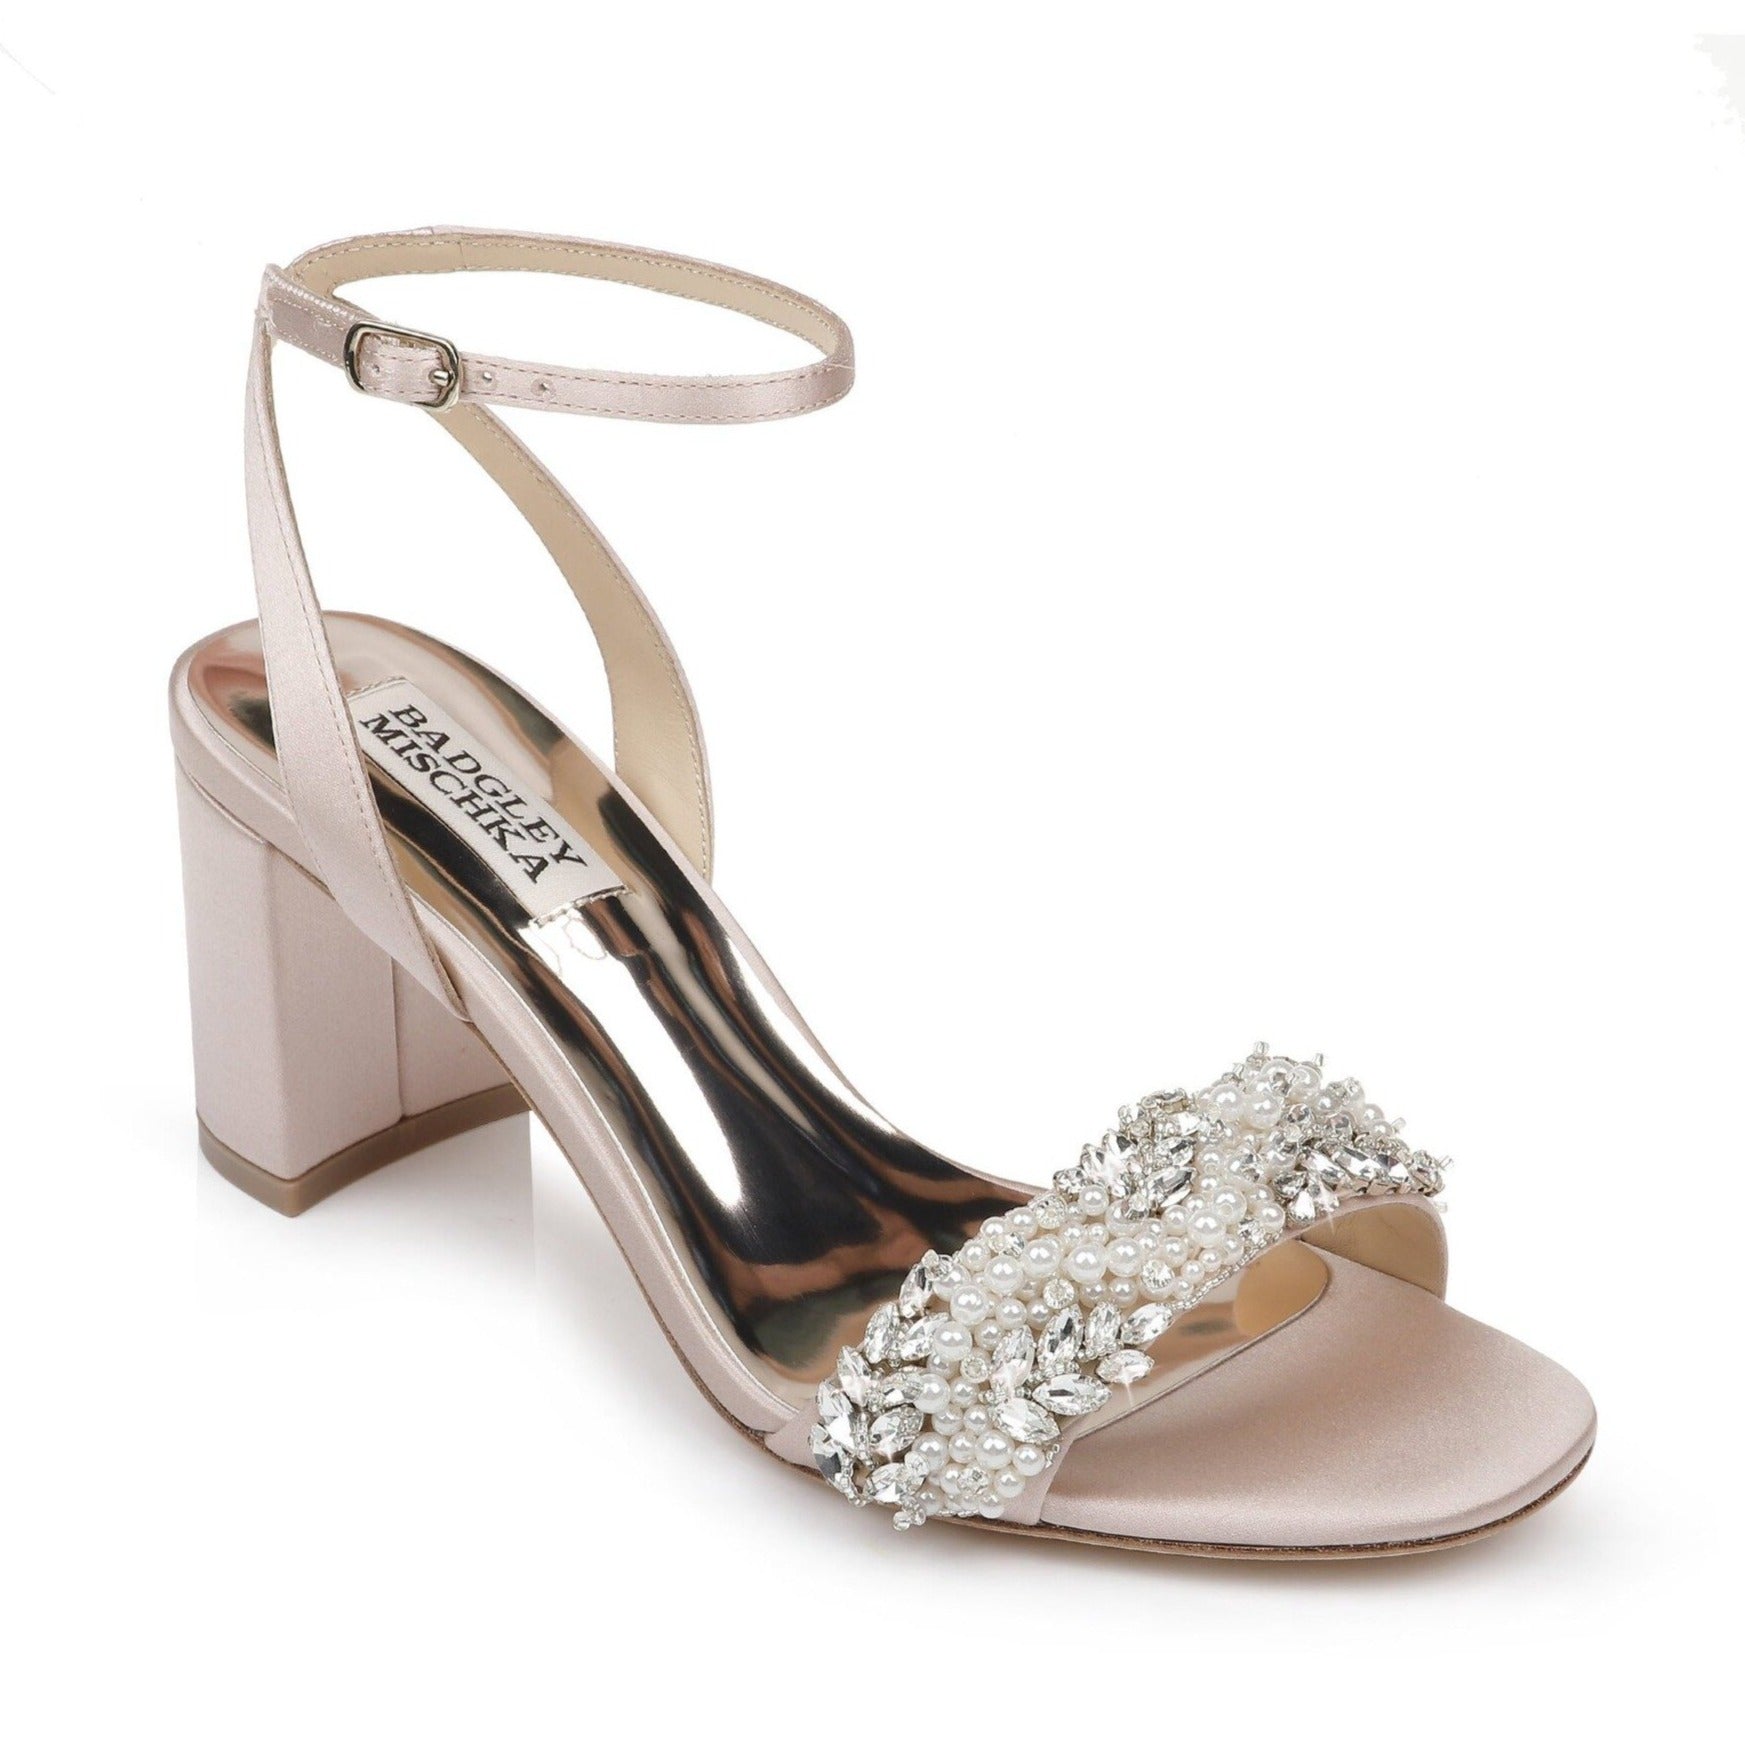 Badgley Mischka Clara Block Heel Wedding Shoes